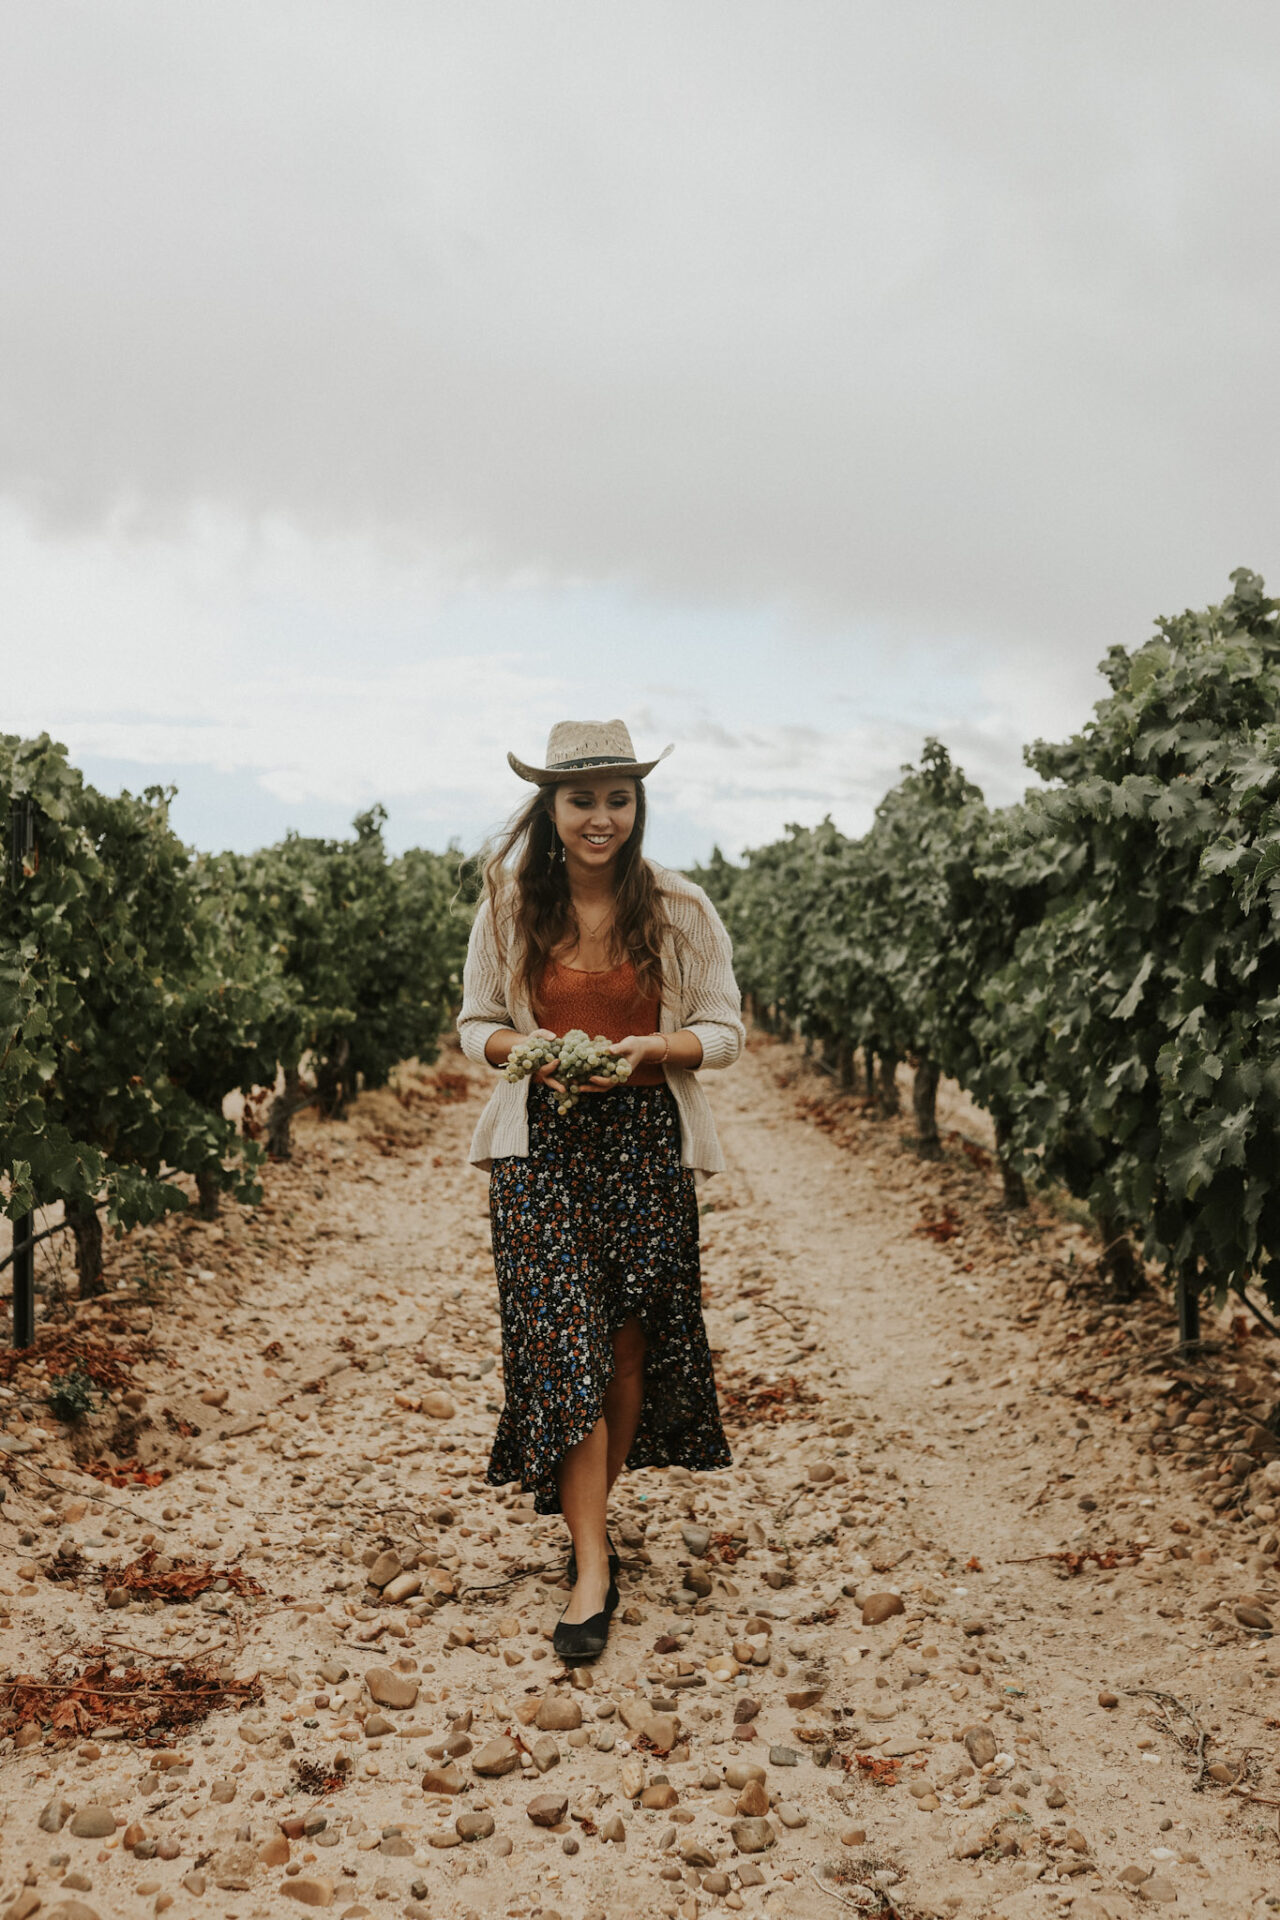 Paige in Rueda vineyard